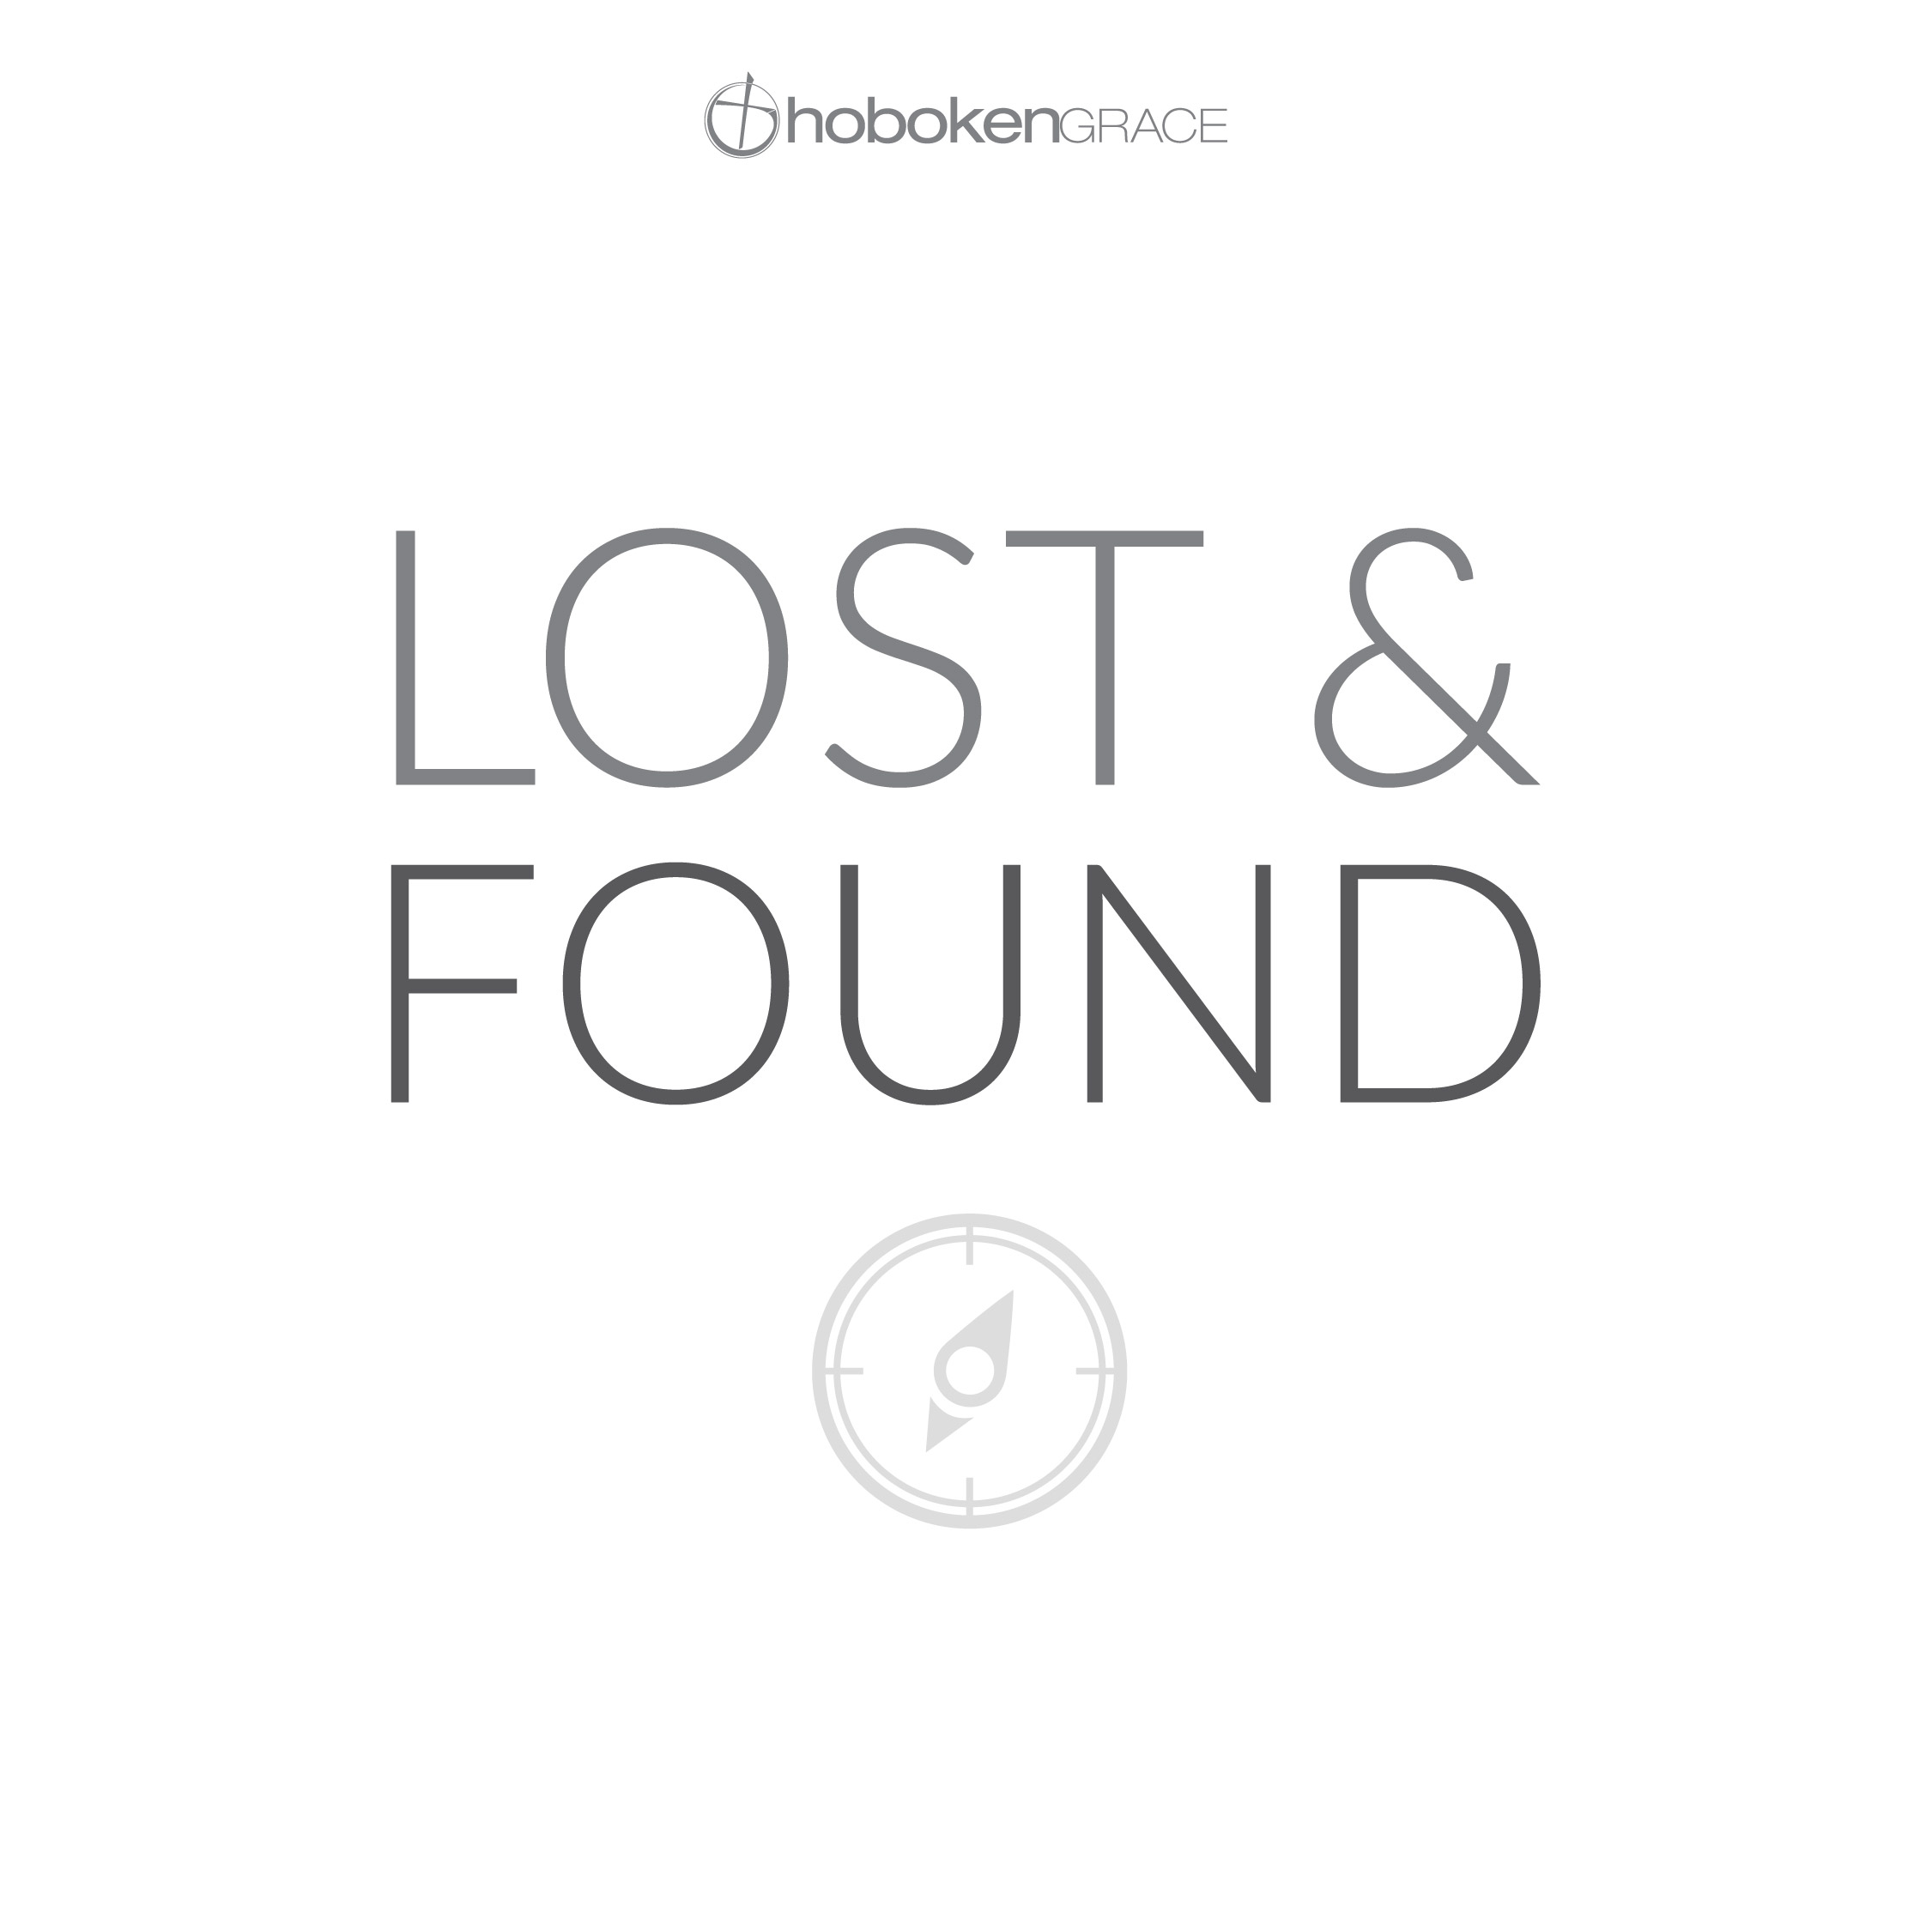 Lost & Found - Hoboken Grace